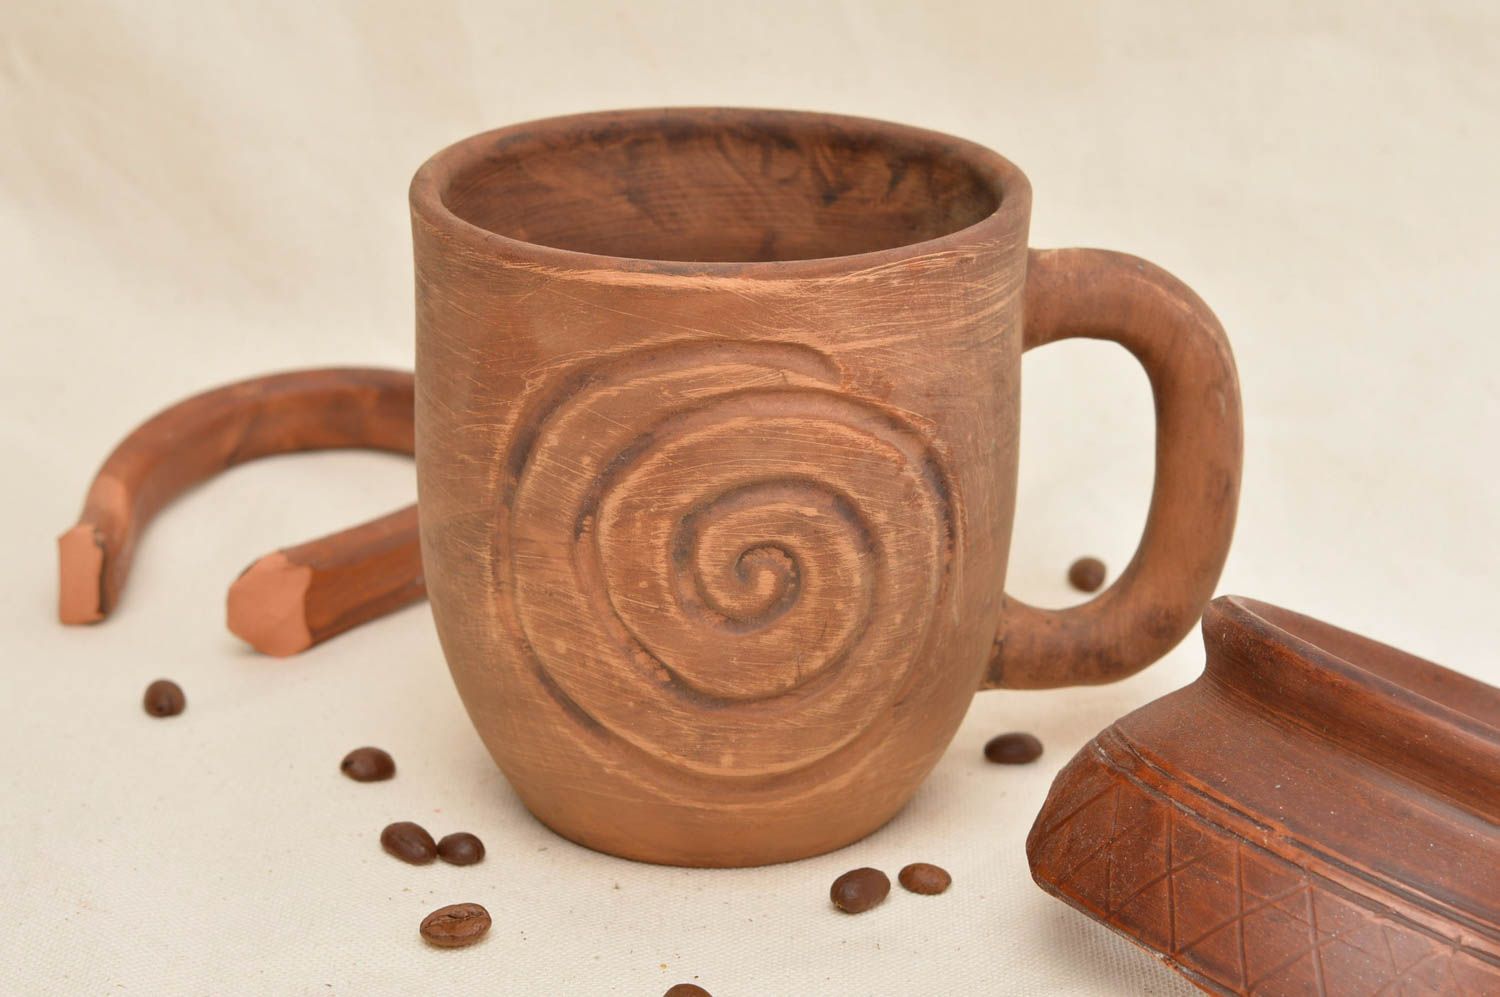 Глиняная чашка небольшая коричневая красивая с узорами удобная ручной работы фото 1